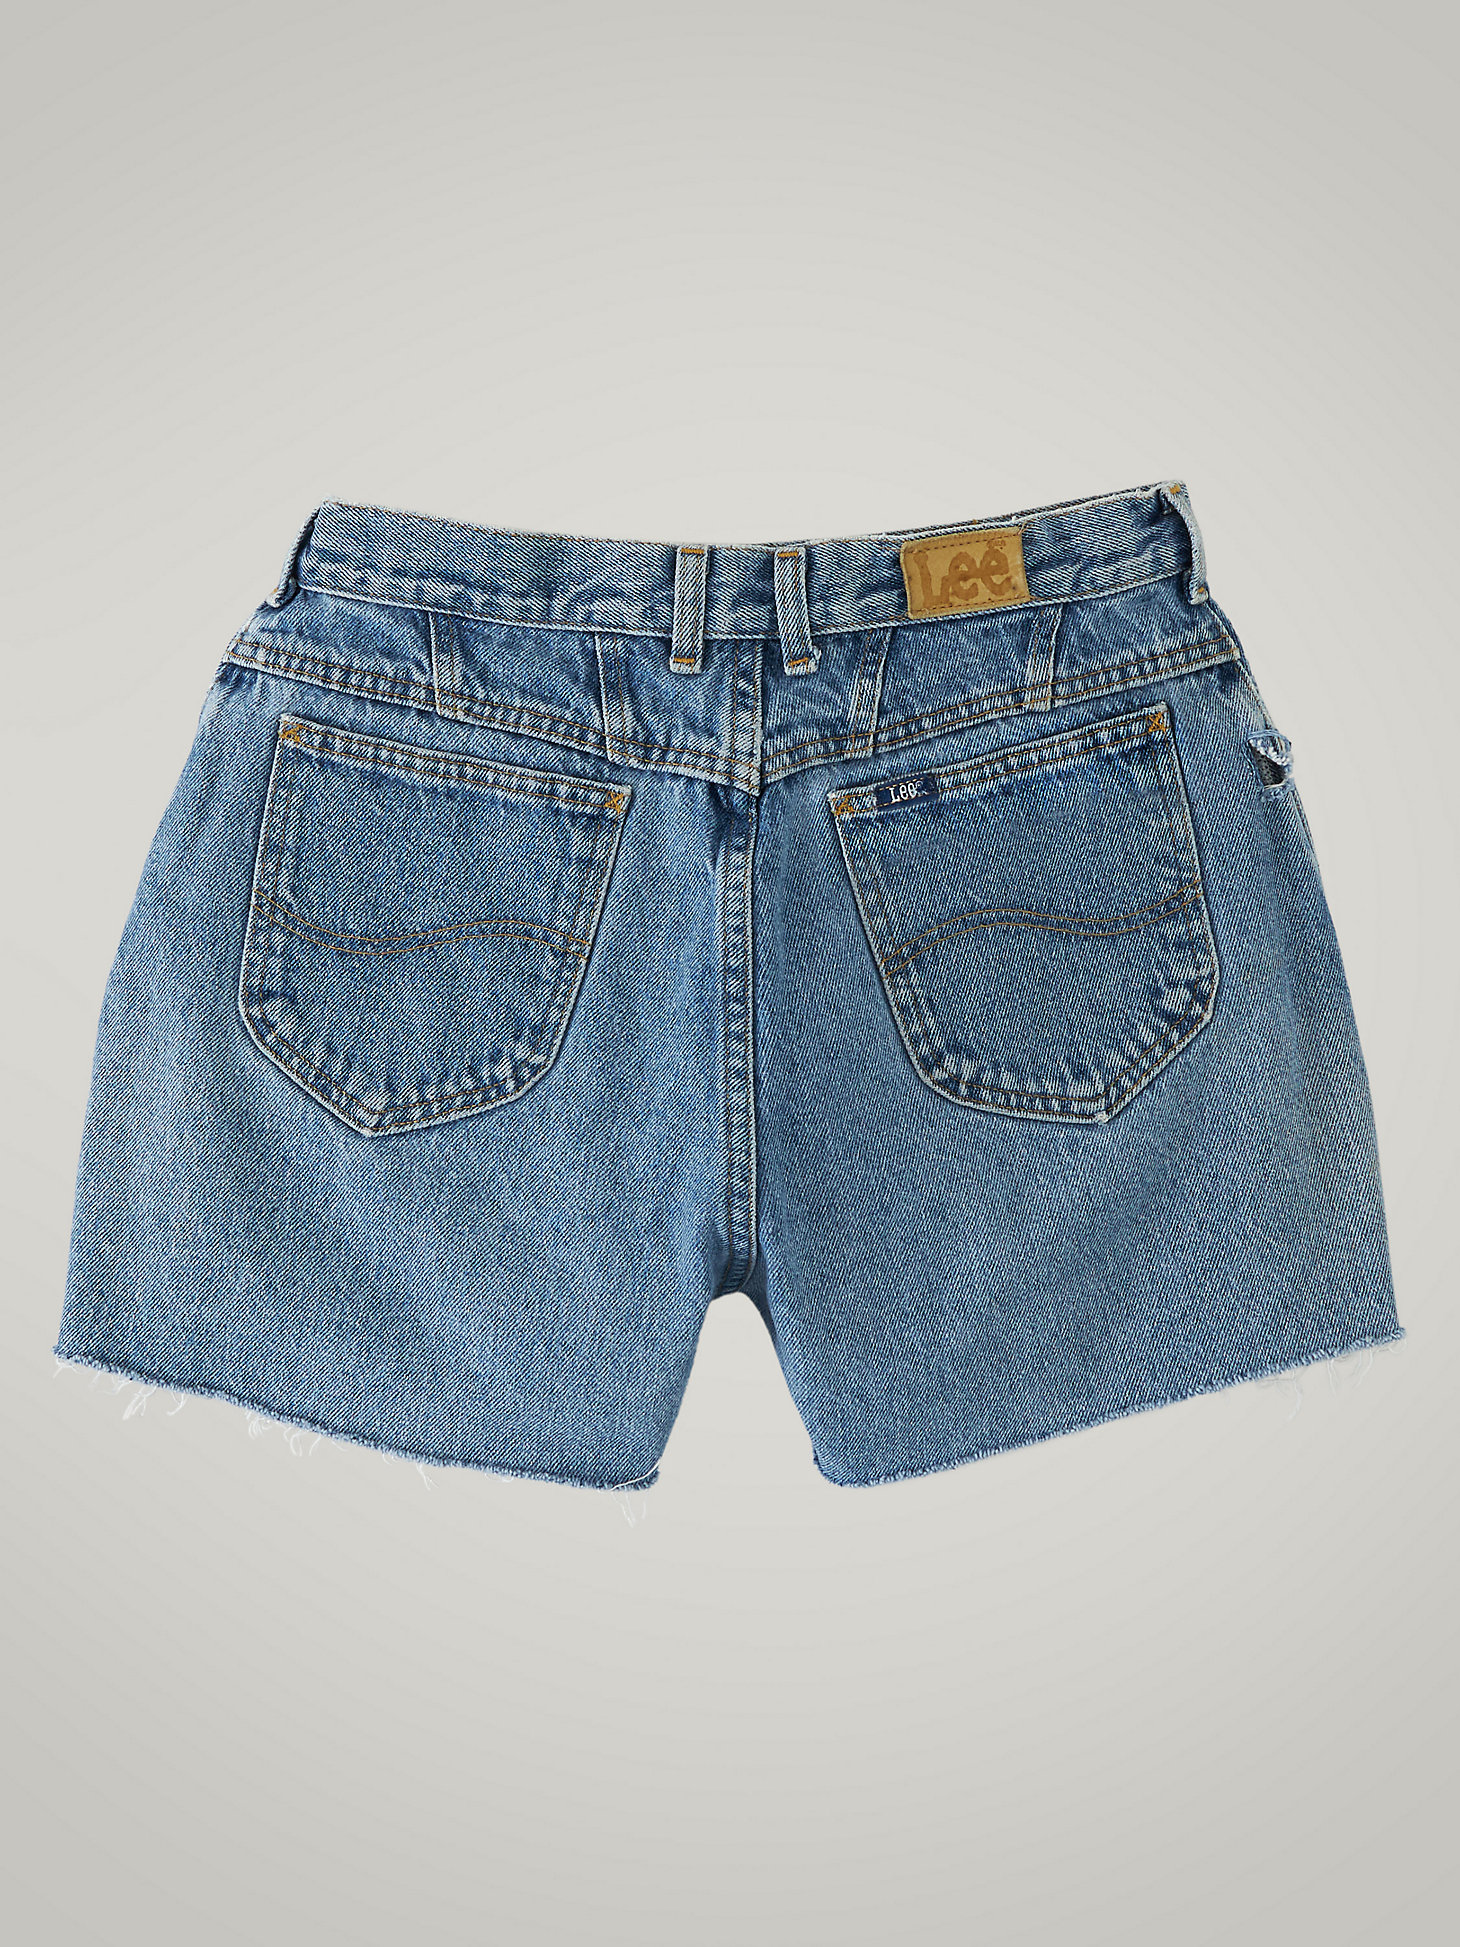 Women's Vintage Cut-Off Shorts WS31 (Size 31) in Medium Denim alternative view 1